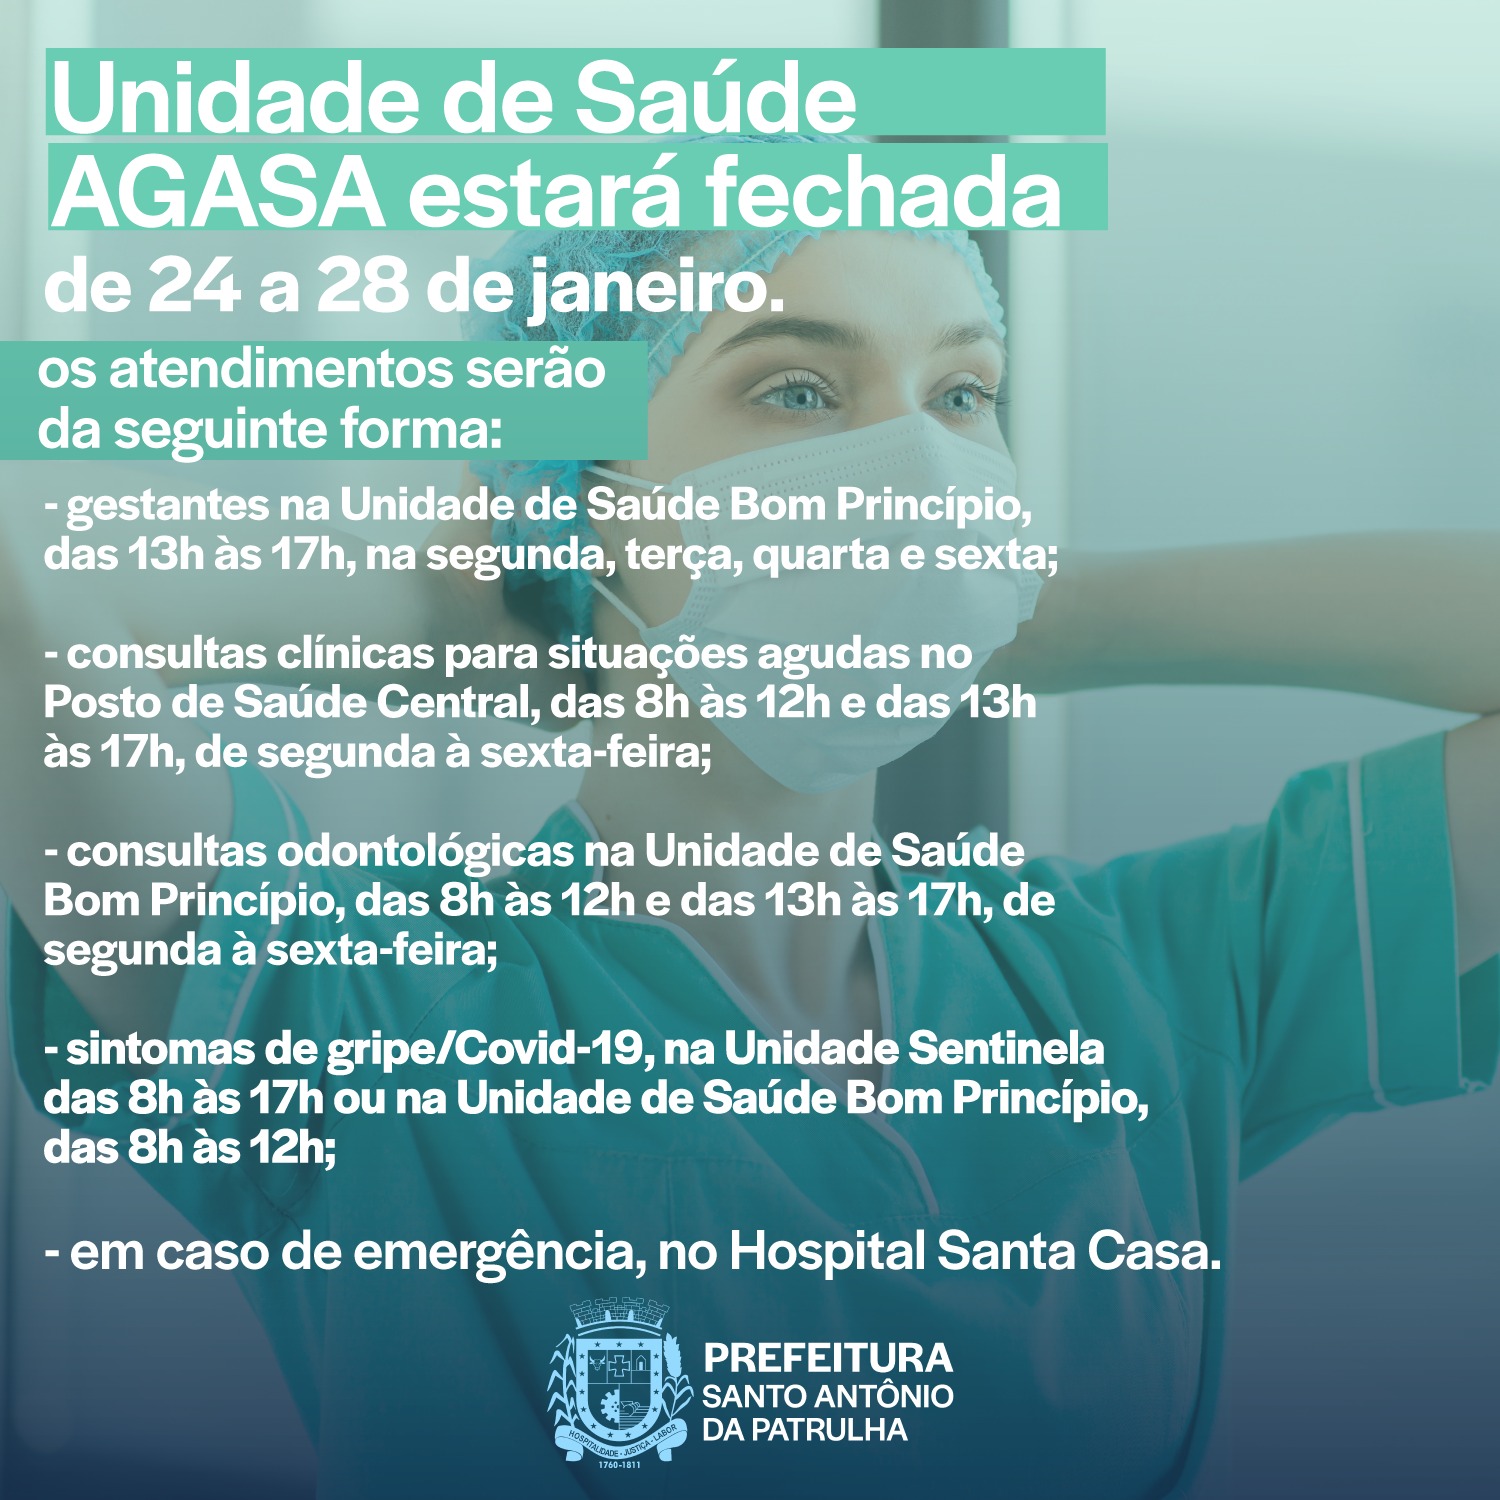 A Secretaria Municipal da Saúde informa que as Unidades de Saúde AGASA e Miraguaia estarão fechadas do dia 24 a 28 de janeiro